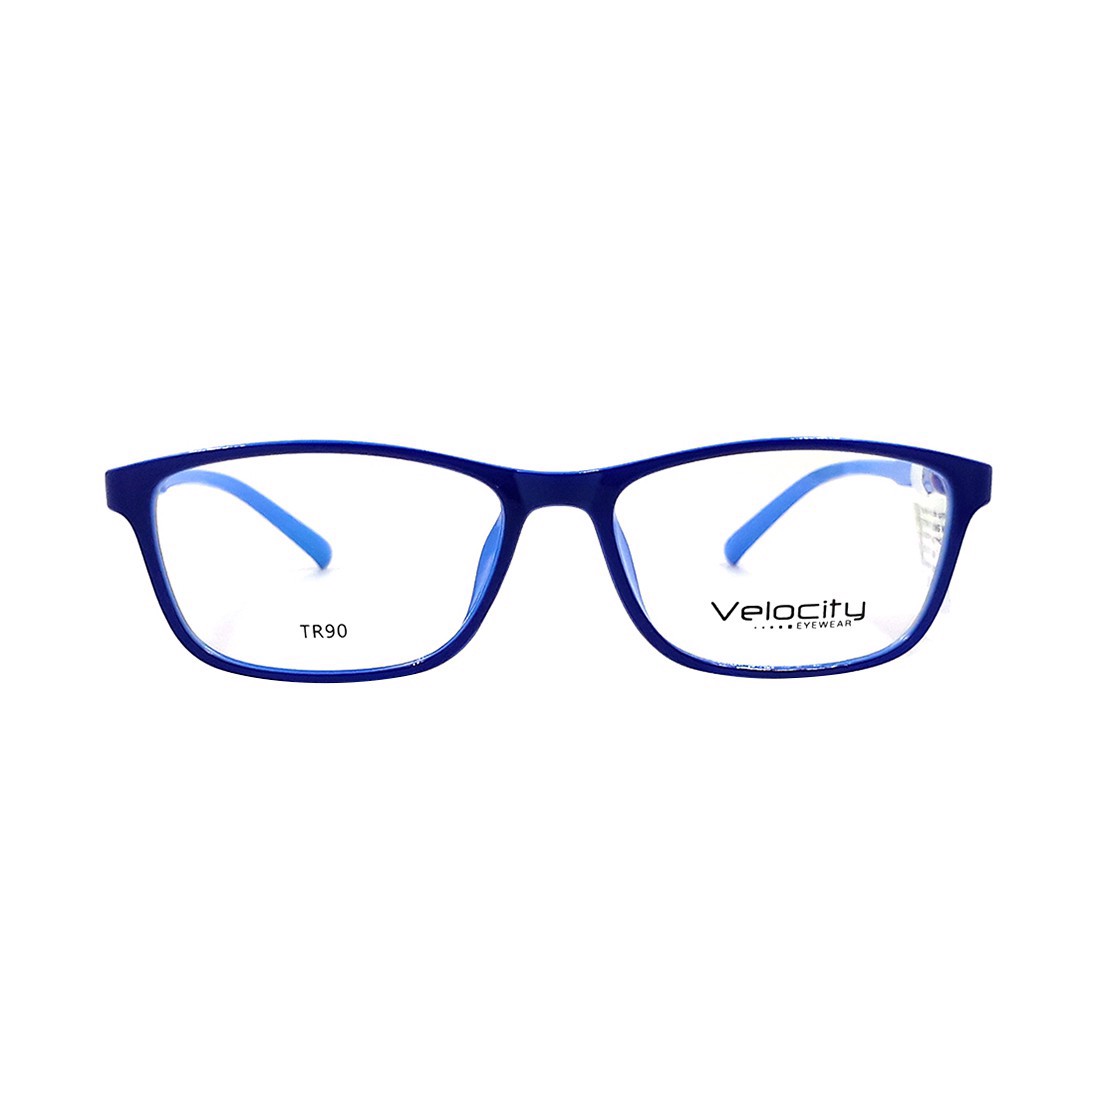 Gọng kính, mắt kính chính hãng Velocity VL36459 162 - Tặng 1 khăn và nước lau kính - khăn màu ngẫu nhiên